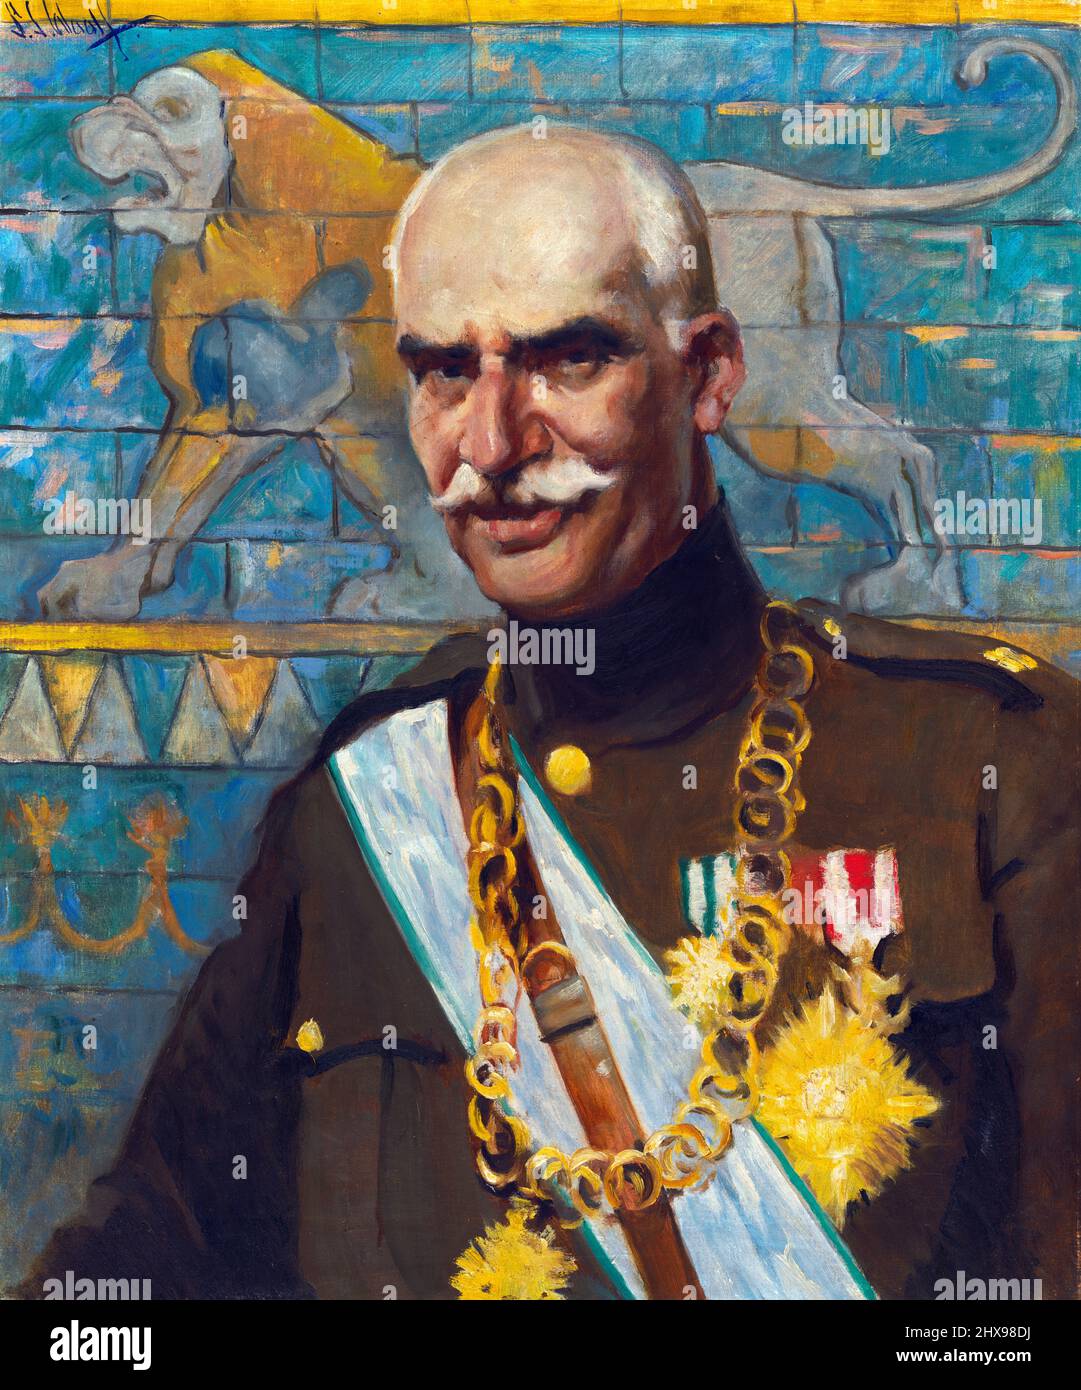 Porträt des Schahs des Iran, Reza Shah Pahlavi (1878-1944) von Samuel Johnson Woolf, Öl auf Leinwand, 1938 Stockfoto